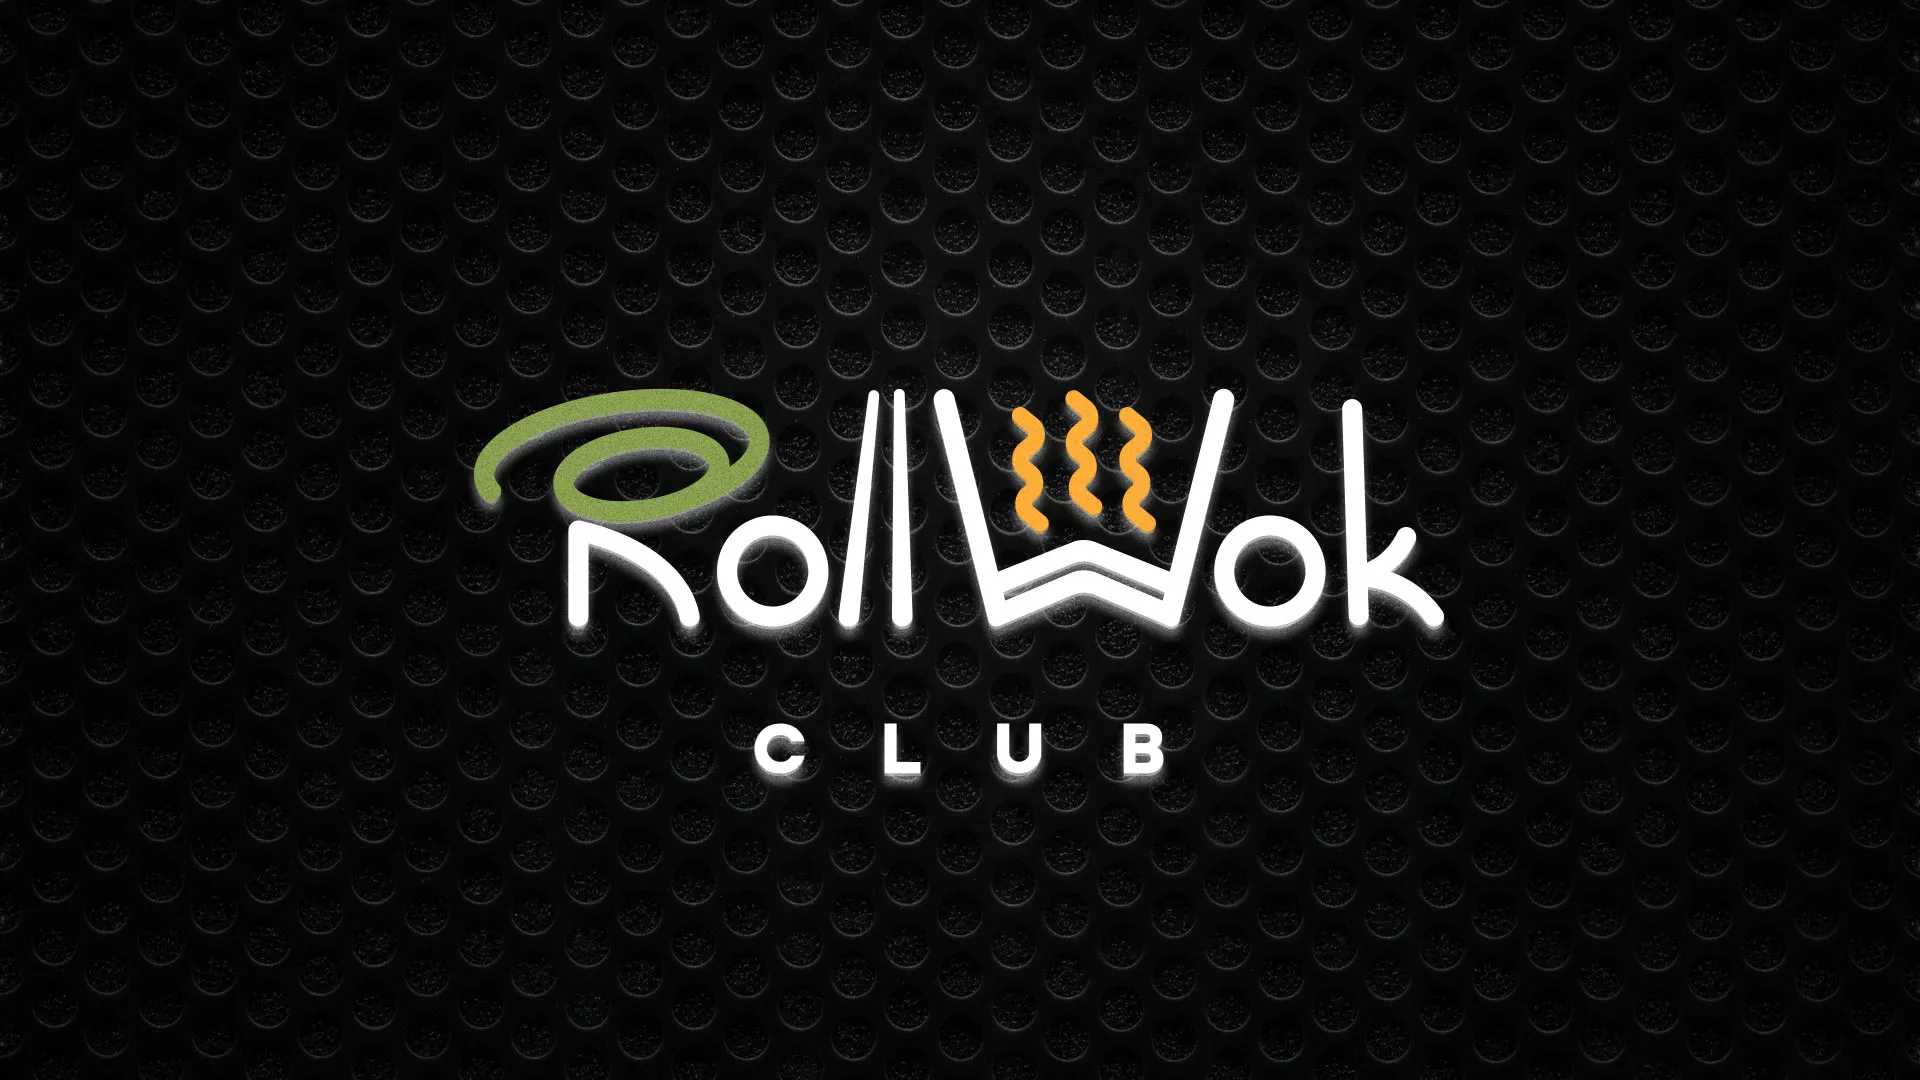 Брендирование торговых точек суши-бара «Roll Wok Club» в Зее